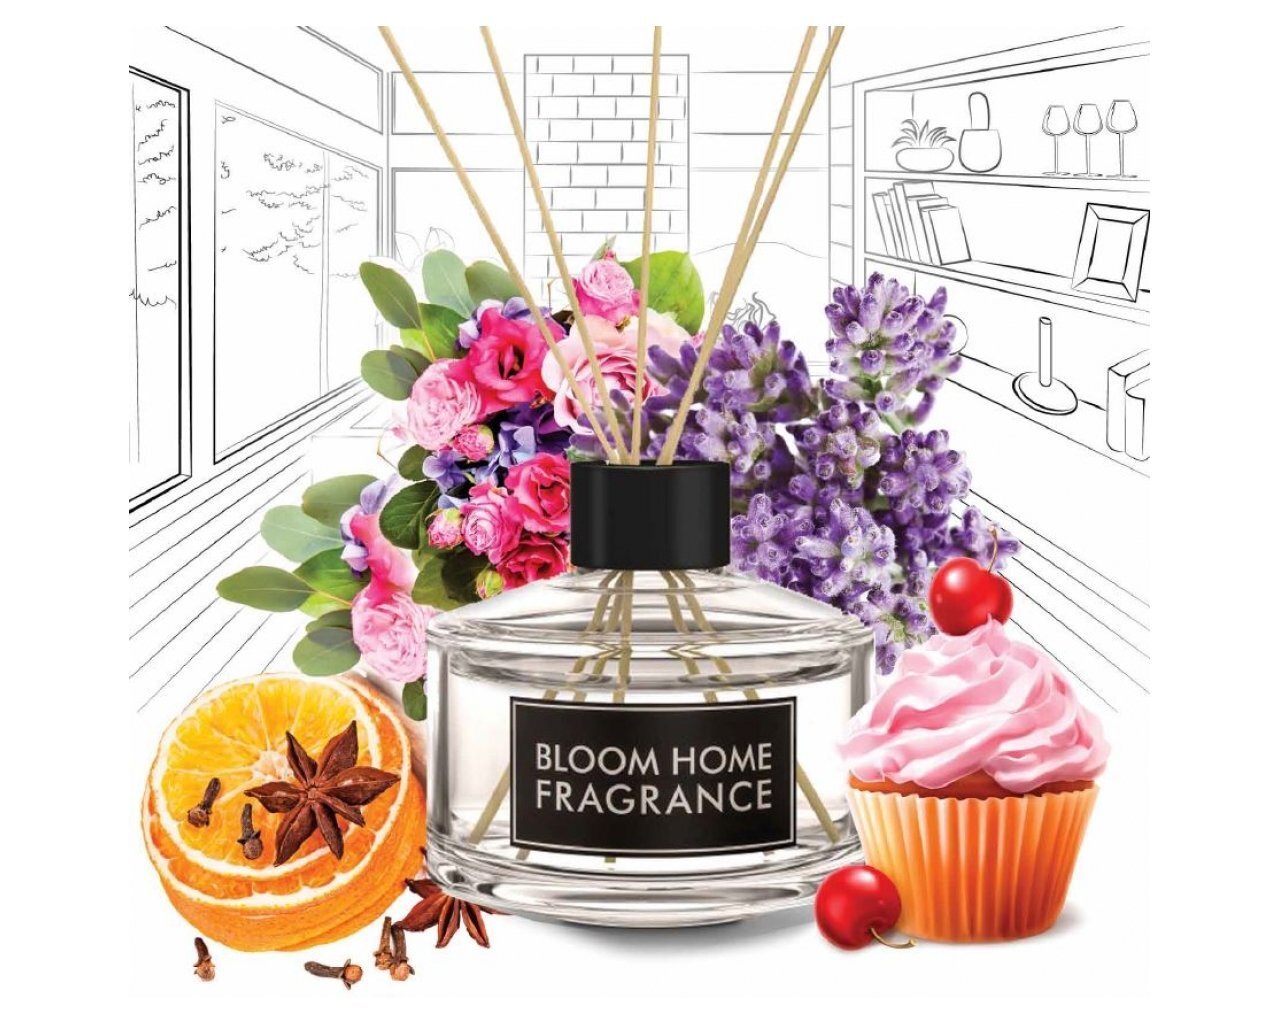 Namų kvapas su lazdelėmis Bloom Home Fragrance Bouquet of Levander 90 ml kaina ir informacija | Namų kvapai | pigu.lt